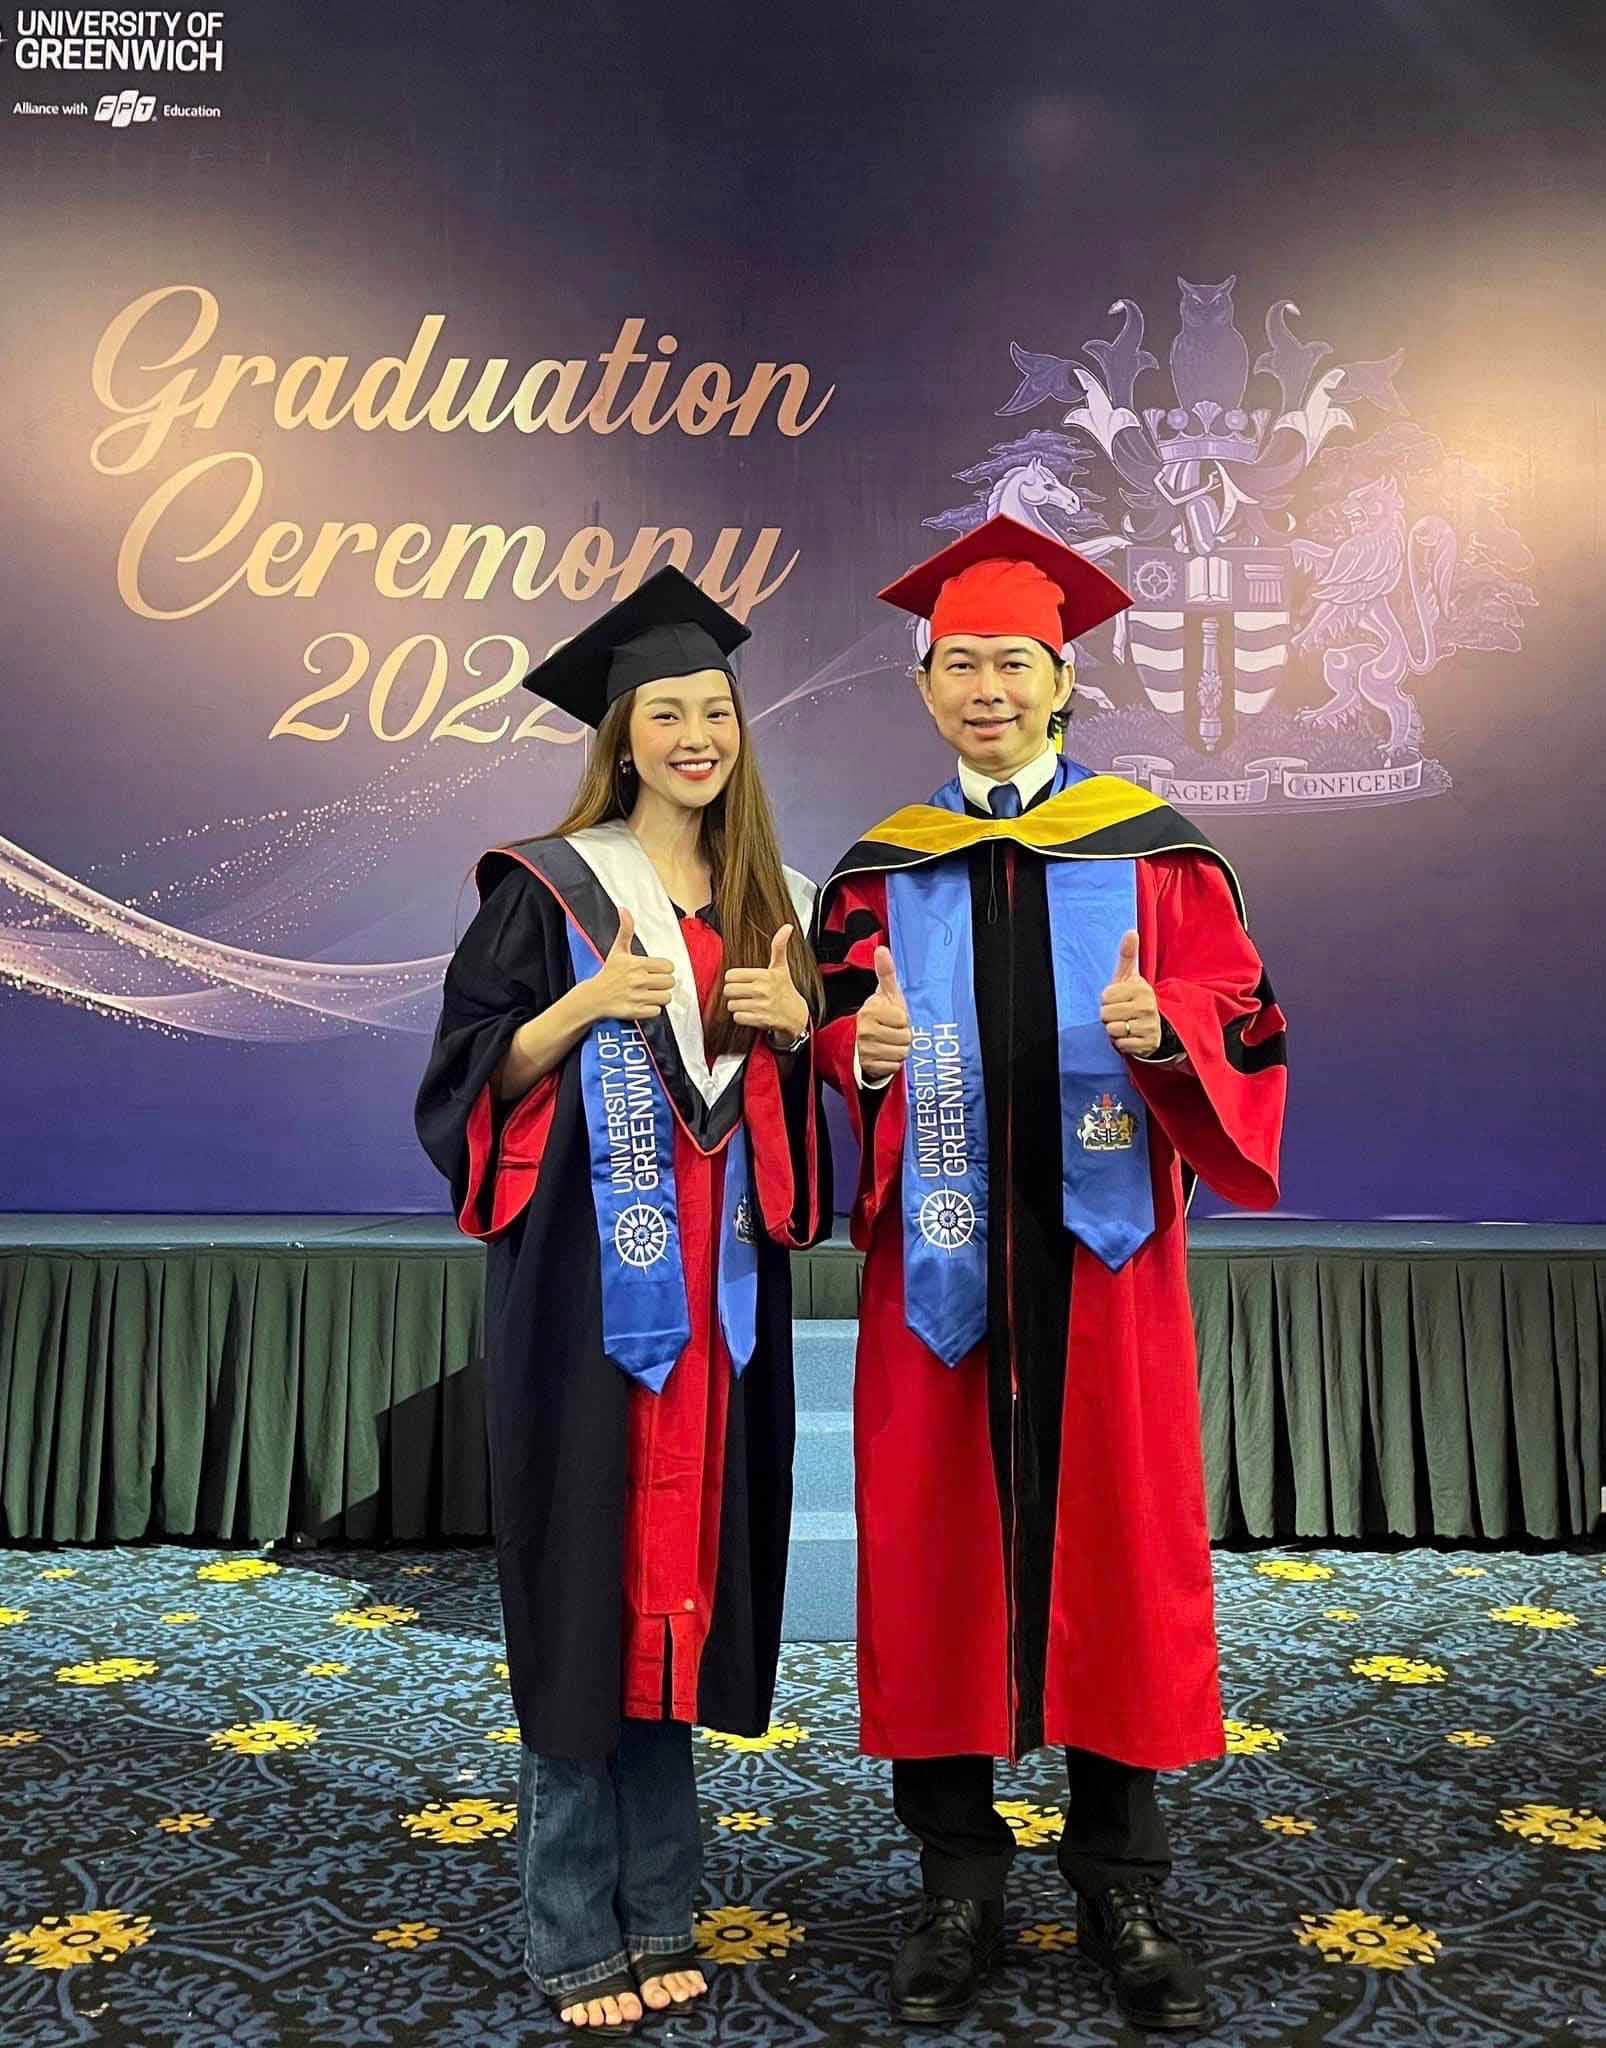 Được biết, Tam Triều Dâng vừa tốt nghiệp ngành Quản trị kinh doanh tại Đại học Greenwich vào tháng 3/2022.